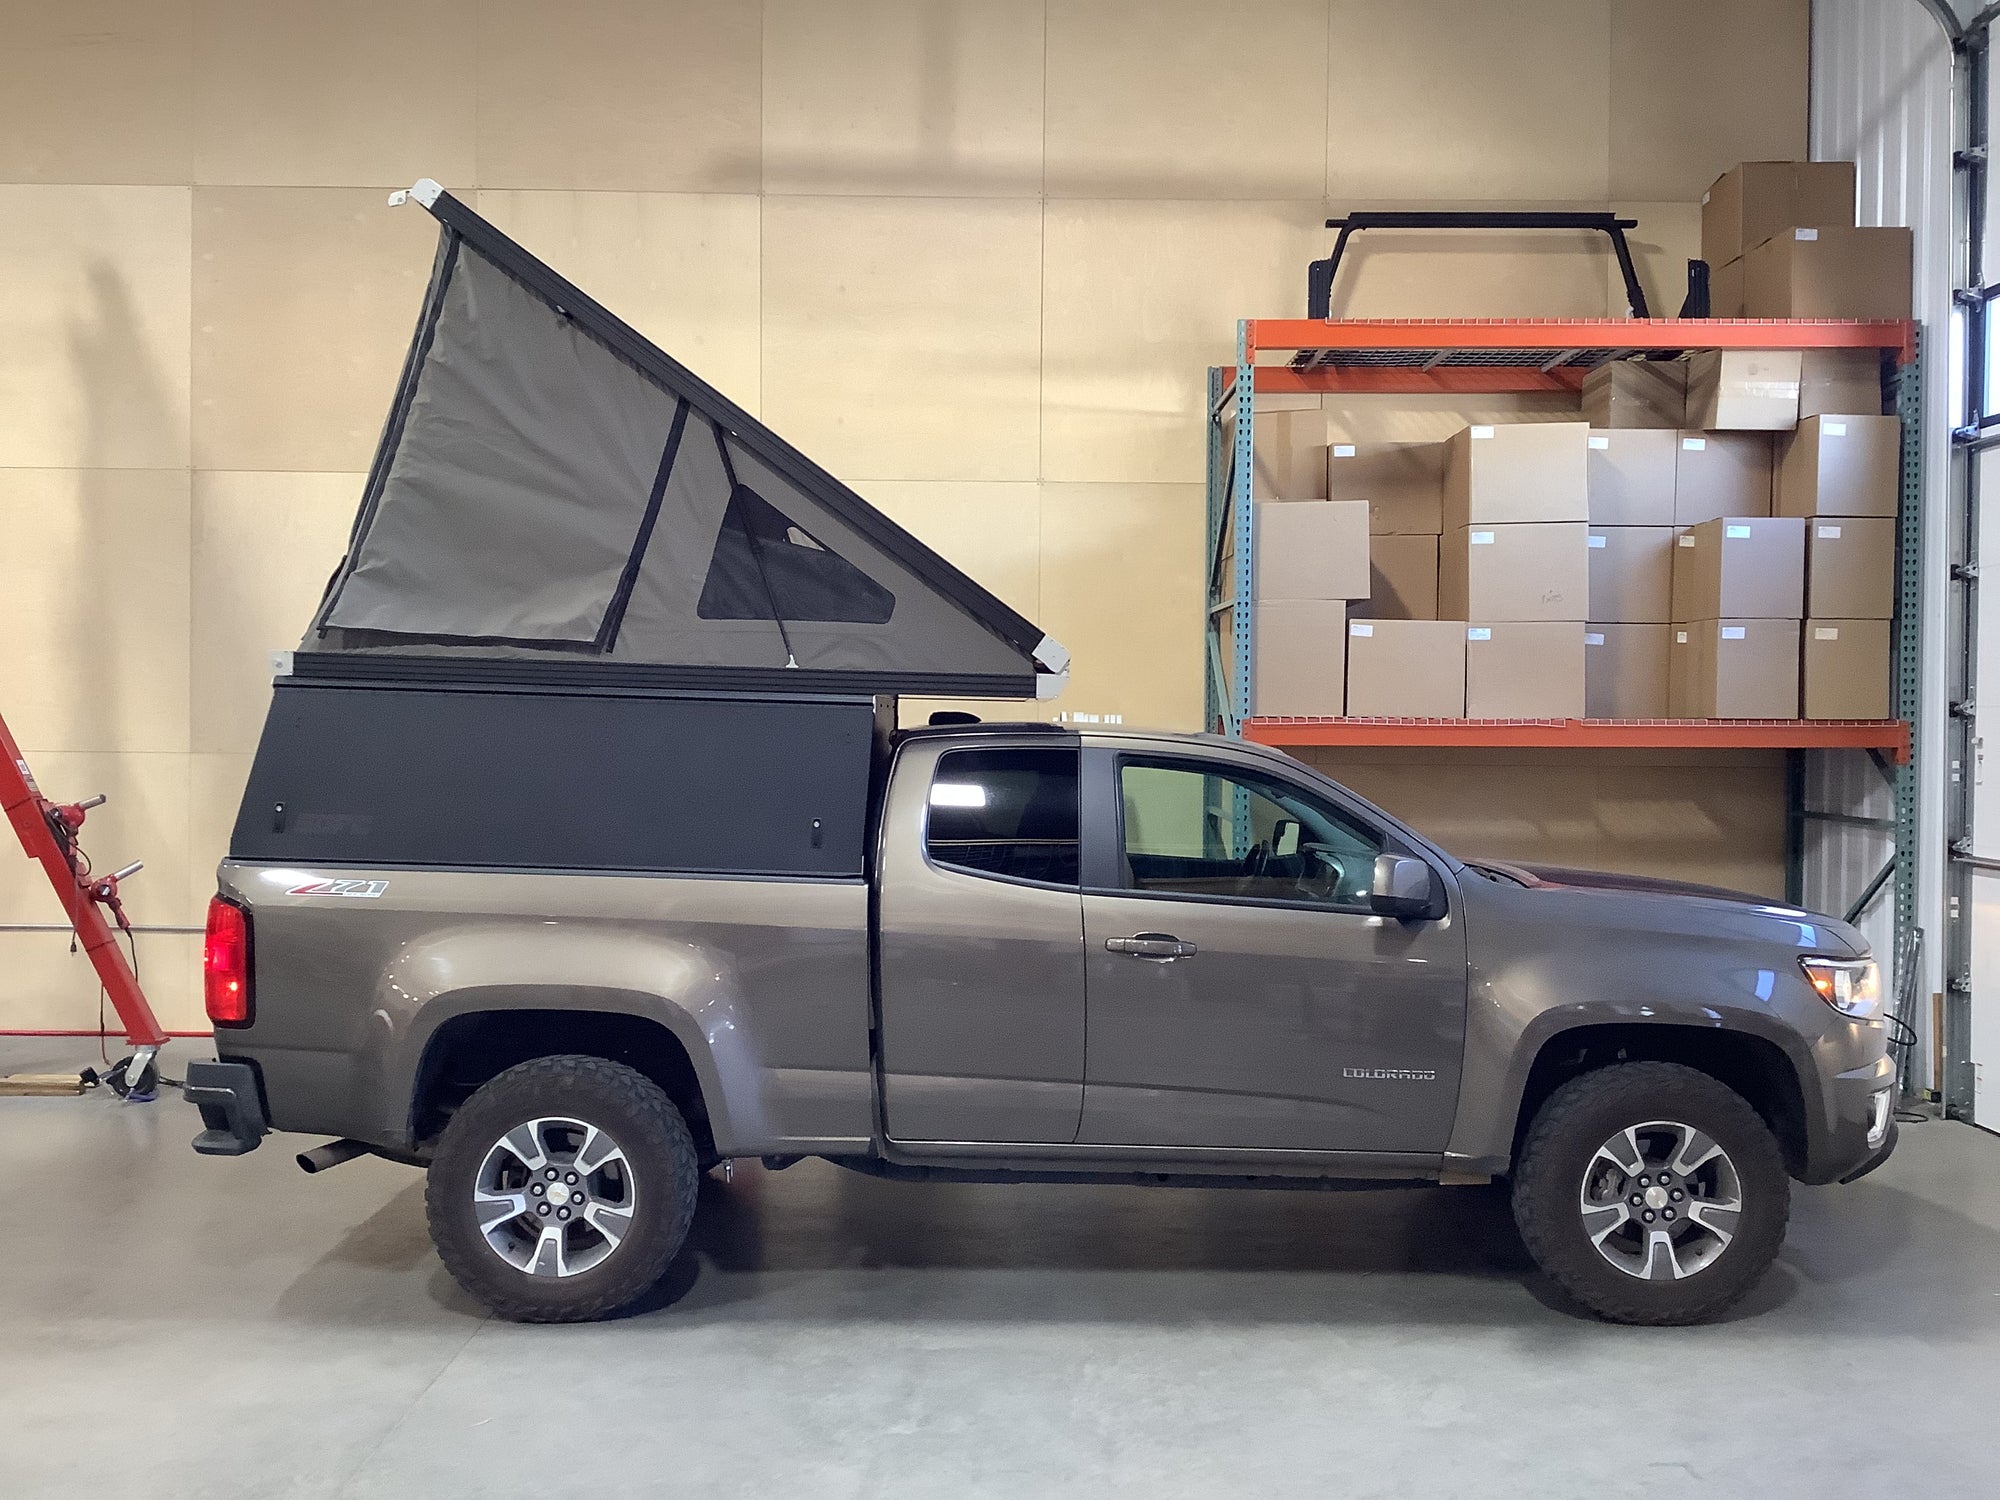 2016 Chevrolet Colorado Camper - Build #3807